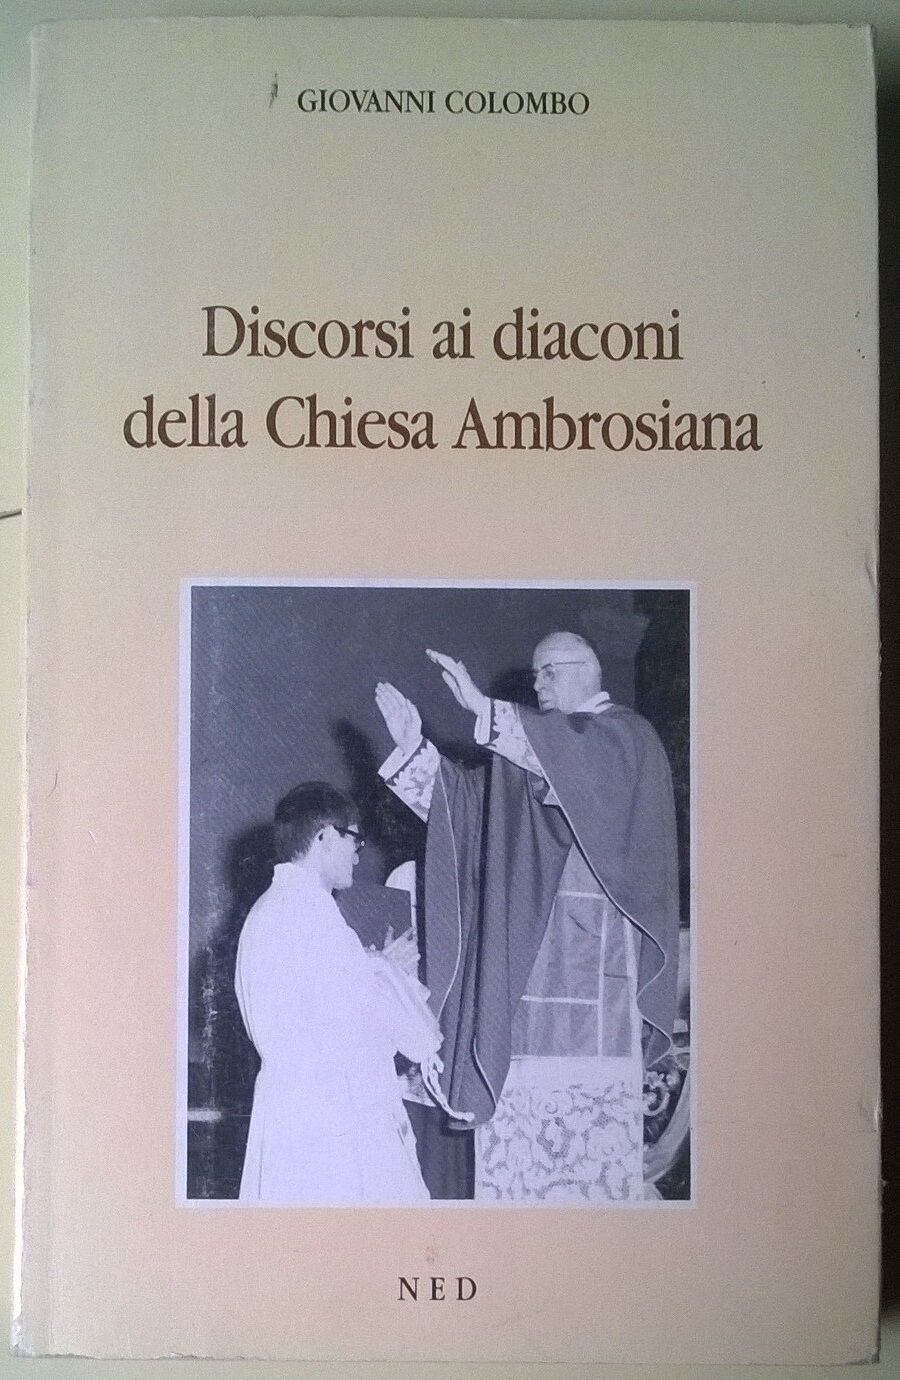 Discorsi ai diaconi della chiesa ambrosiana - Giovanni Colombo - NED, 1992 - L 